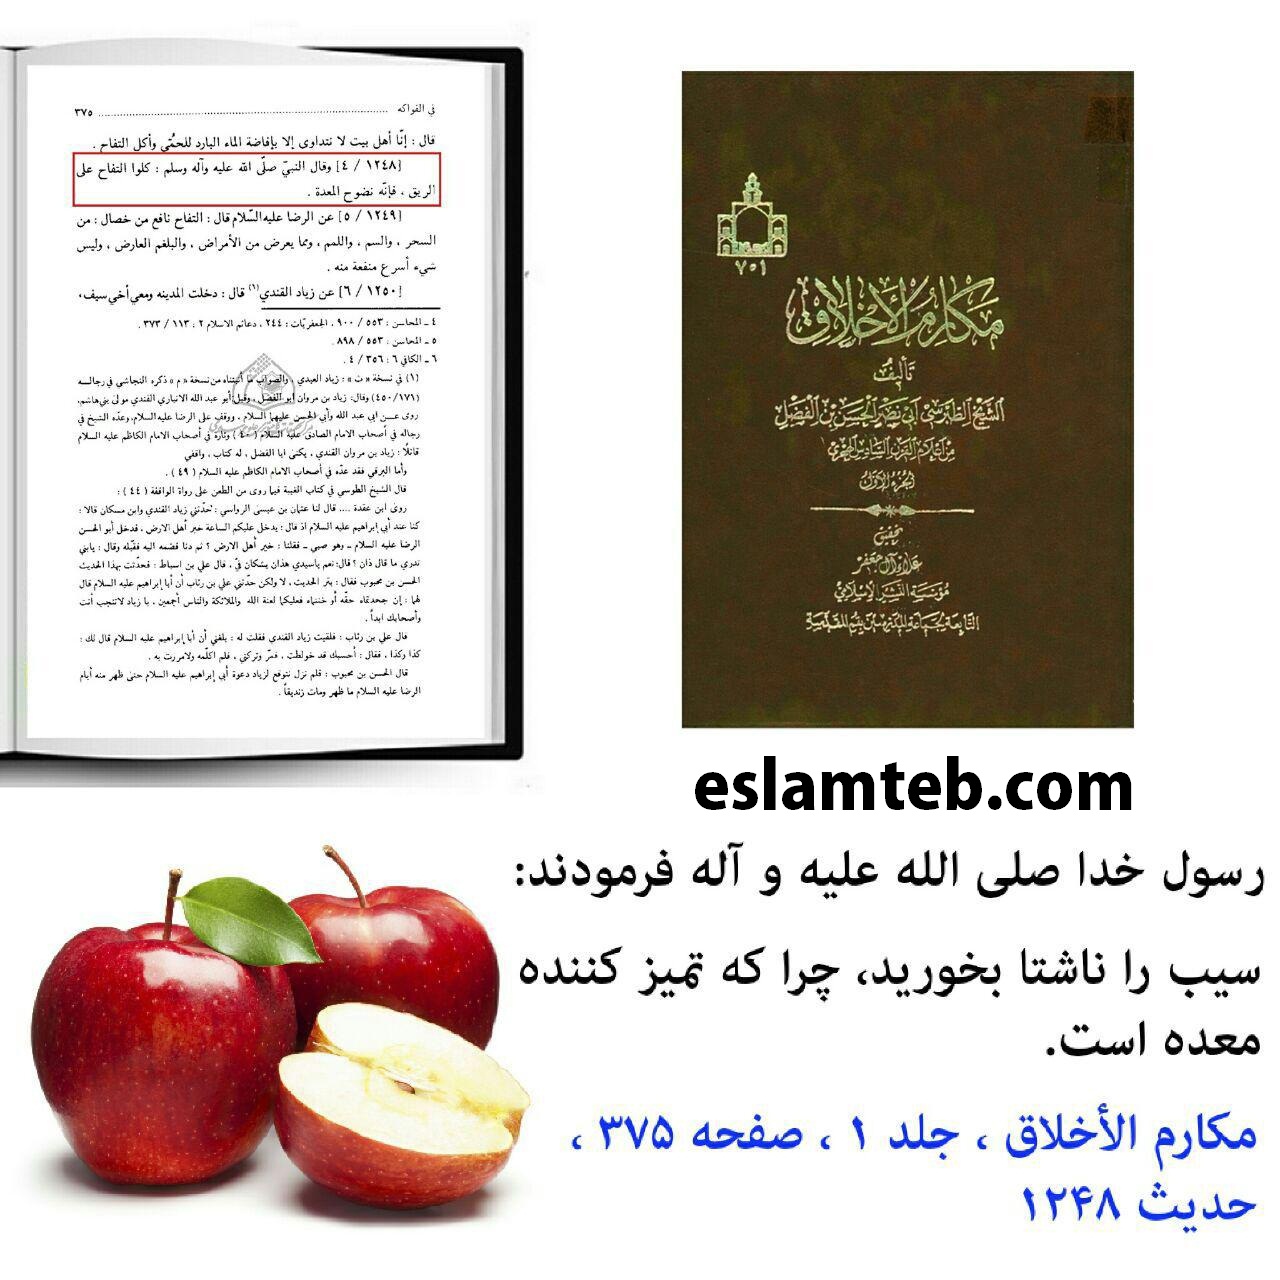 سیب و خواص آن از منظر طب اسلامی